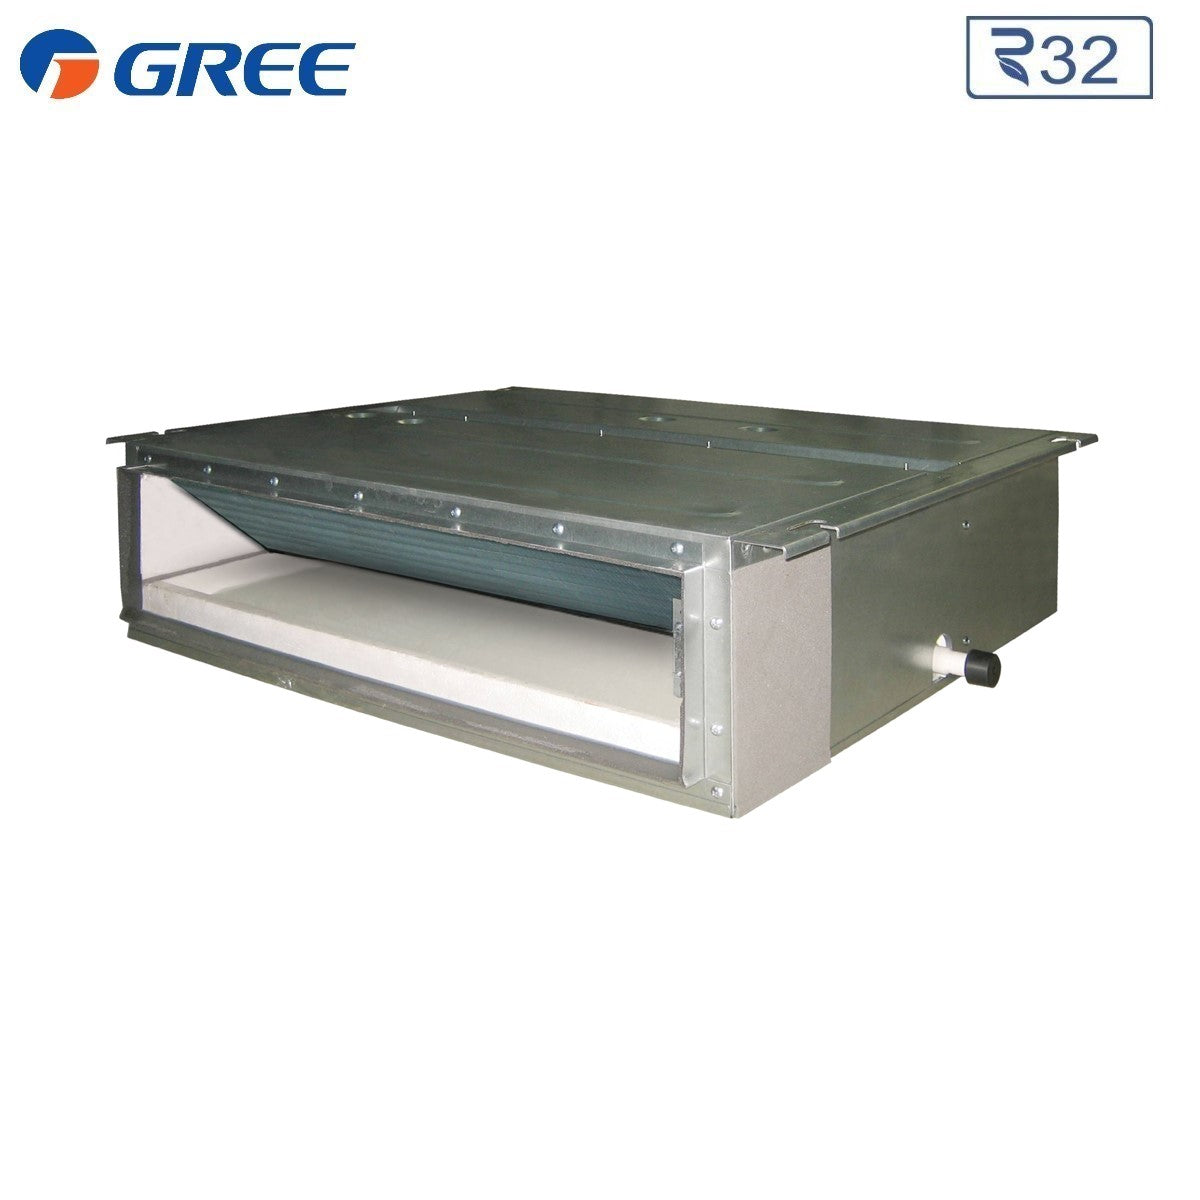 immagine-3-gree-climatizzatore-condizionatore-gree-canalizzato-dual-split-inverter-912-con-gwhd24nk6oo-r-32-900012000